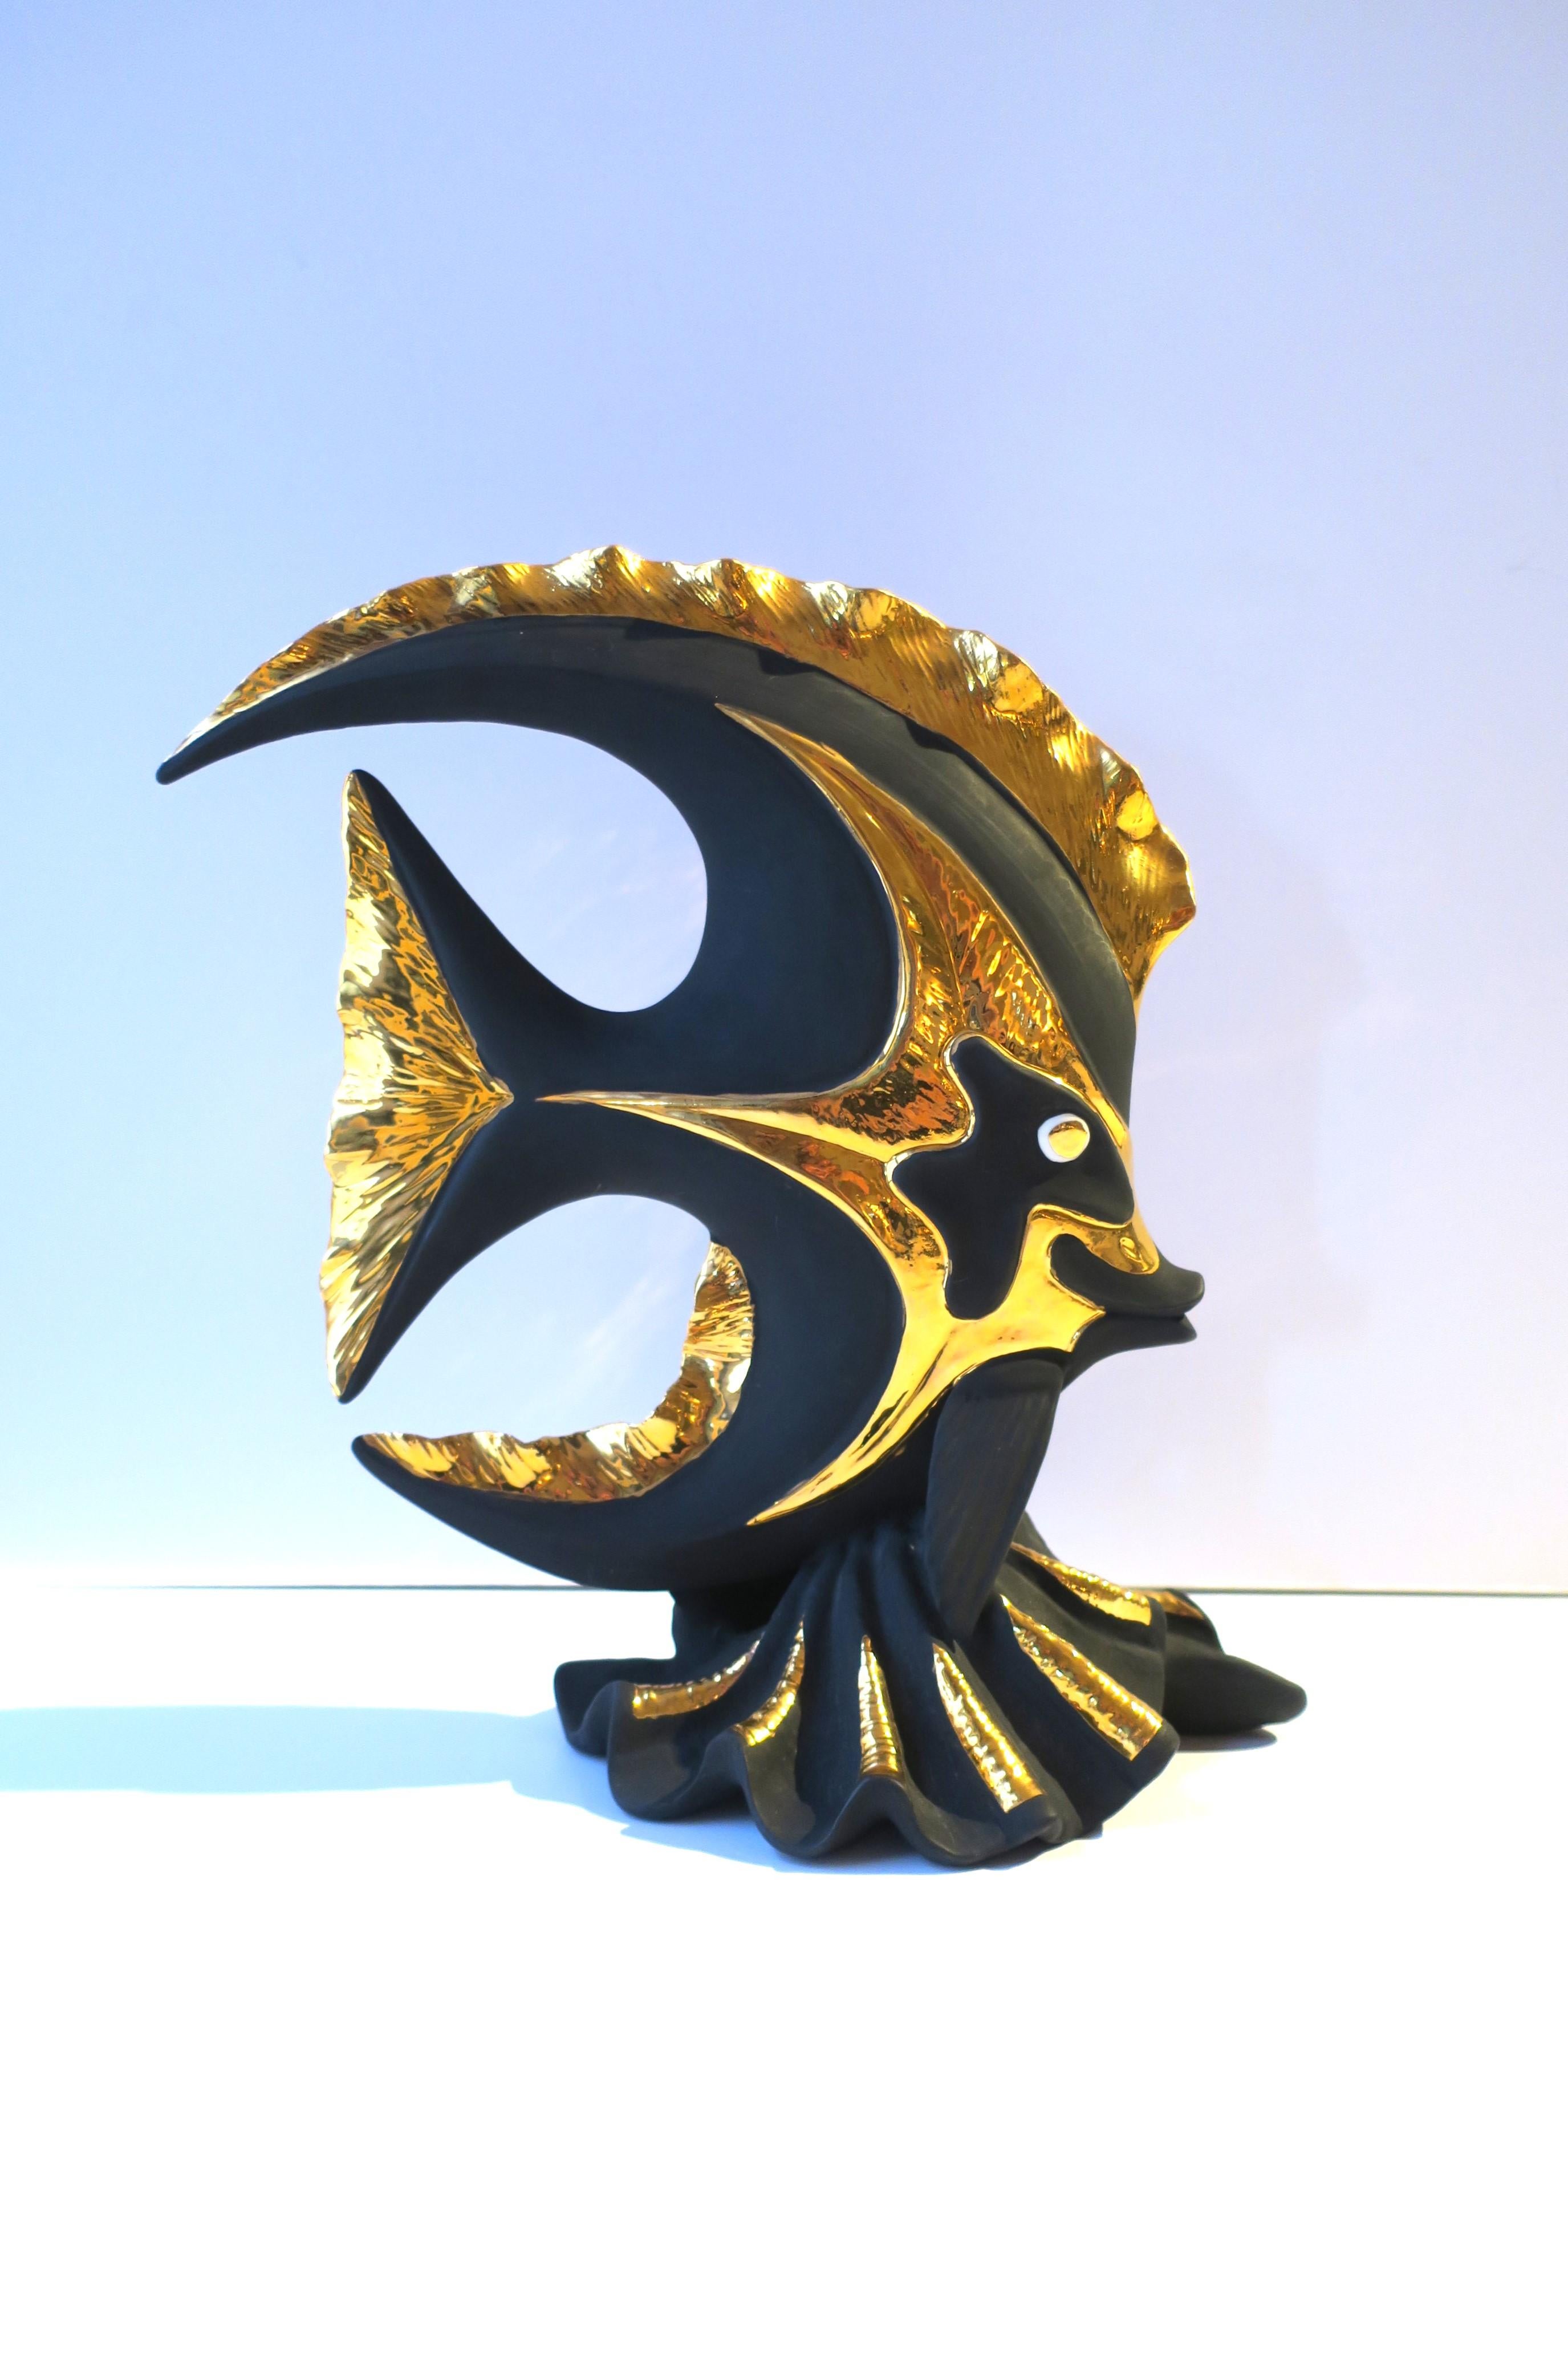 Sculpture italienne de poissons tropicaux en porcelaine de basalte noir et or, réalisée à la main par S. Puccini, vers la fin du XXe siècle, Italie. Cette sculpture de poisson tropical est faite à la main en porcelaine noire mate et en émail doré